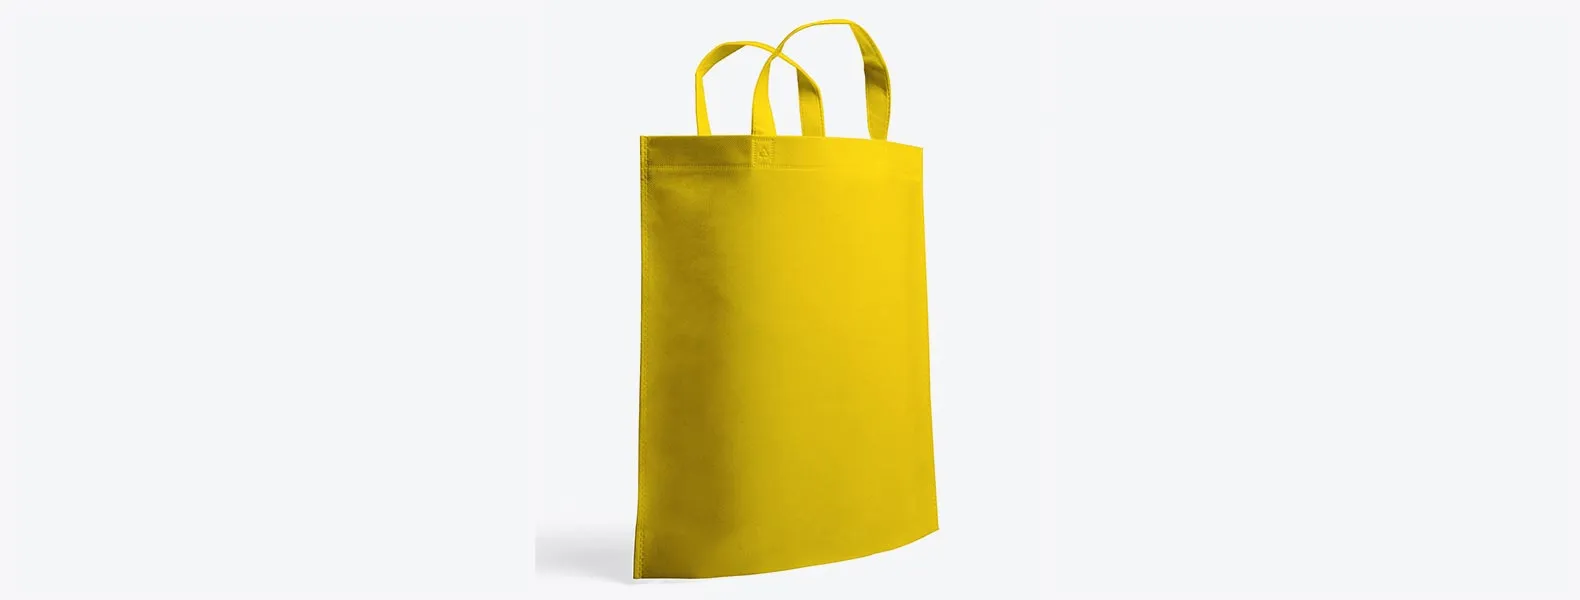 Sacola amarela em TNT termoselado com alças. Gramatura: 80 g/m² Disponível nas cores branca, preta, bege, azul, vermelha, verde, amarela, laranja, roxo e rosa.